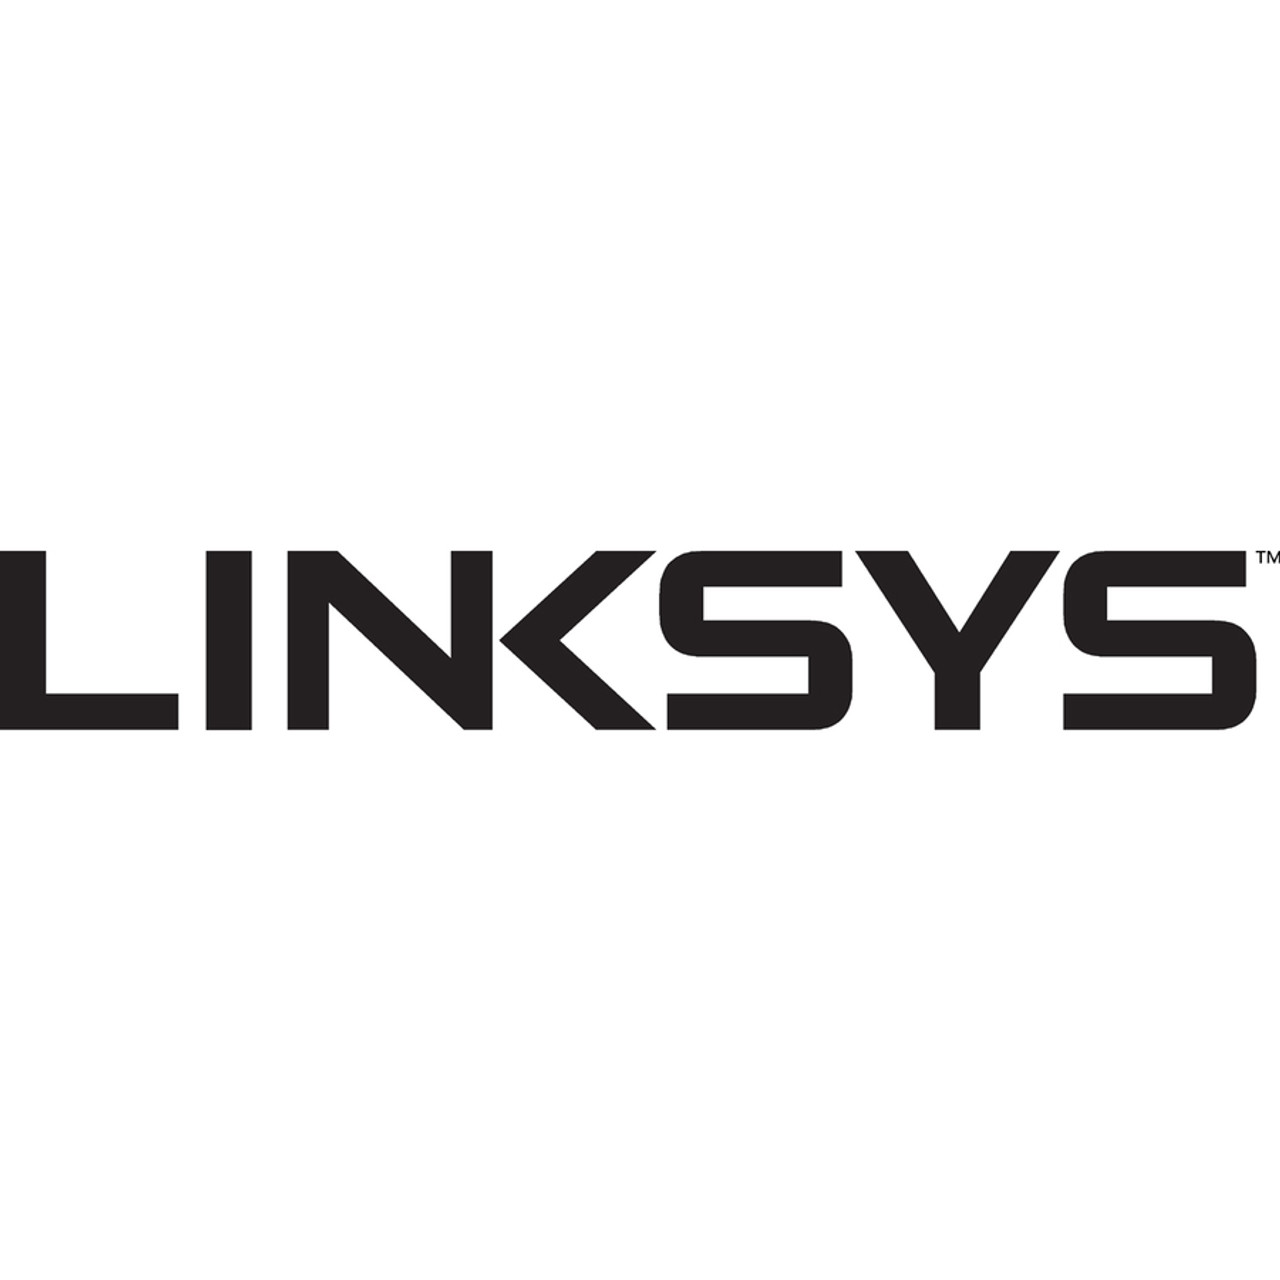 Linksys WUSB6300 AC1200 Wireless-AC USB Adapter